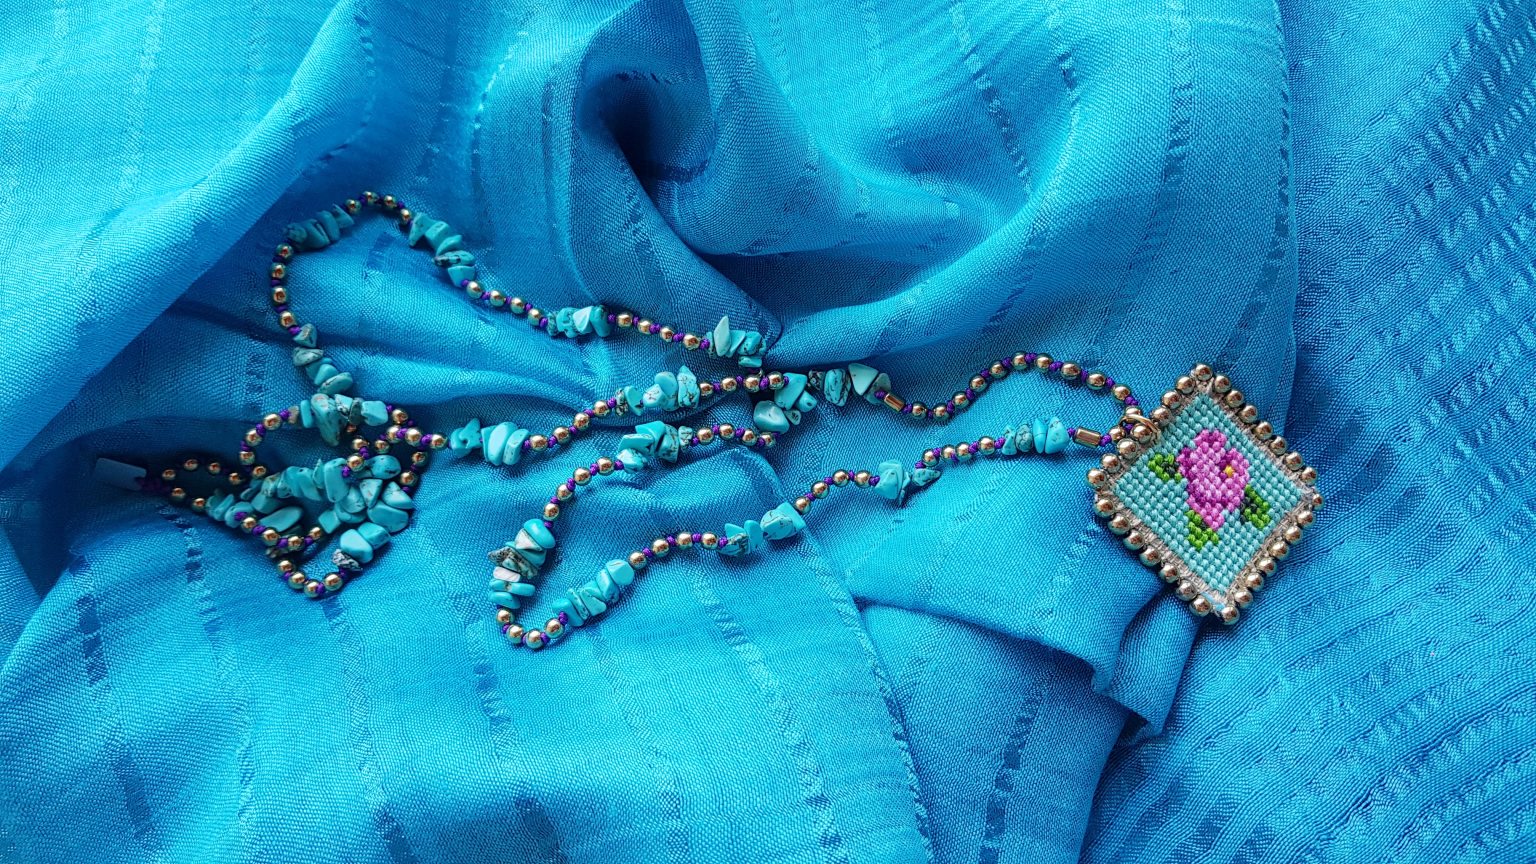 Τurquoise rosary necklace with hand-stitched rose